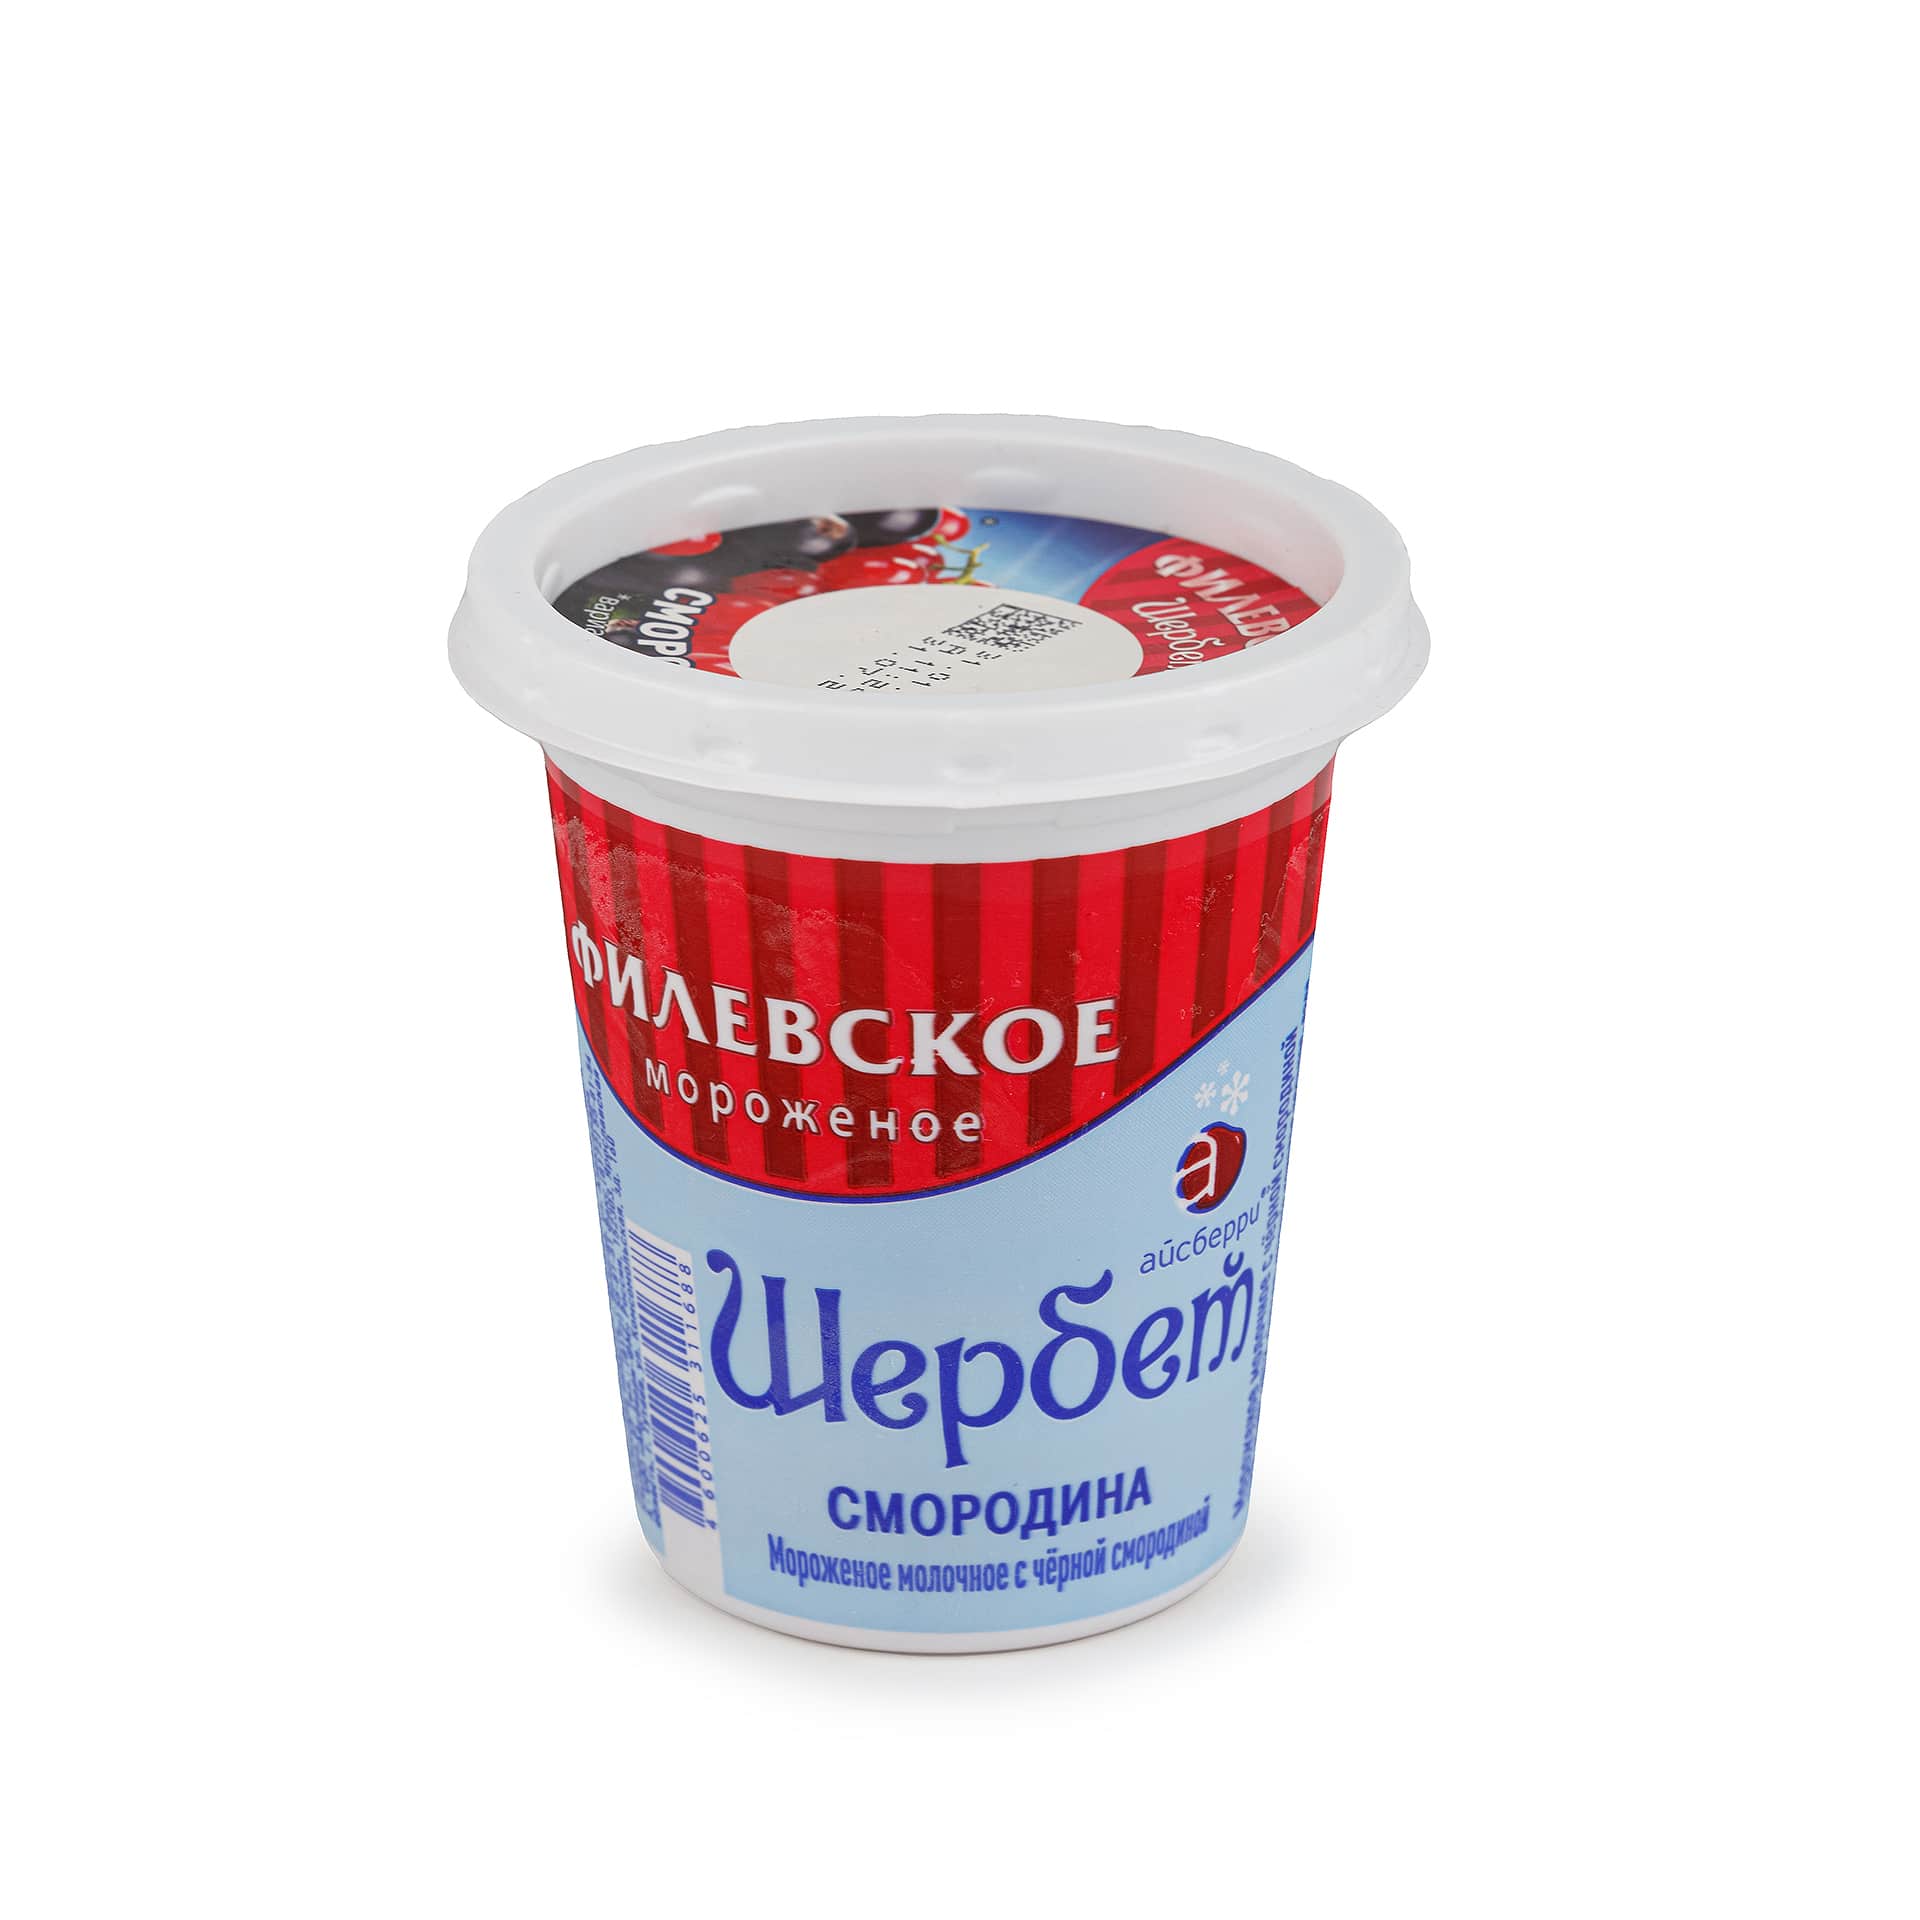 Мороженое молочное с черной смородиной щербет пластиковый стакан Филевское 80 г 34LED, общий вид, купить оптом с доставкой по москве и московской области, недорого, низкая цена